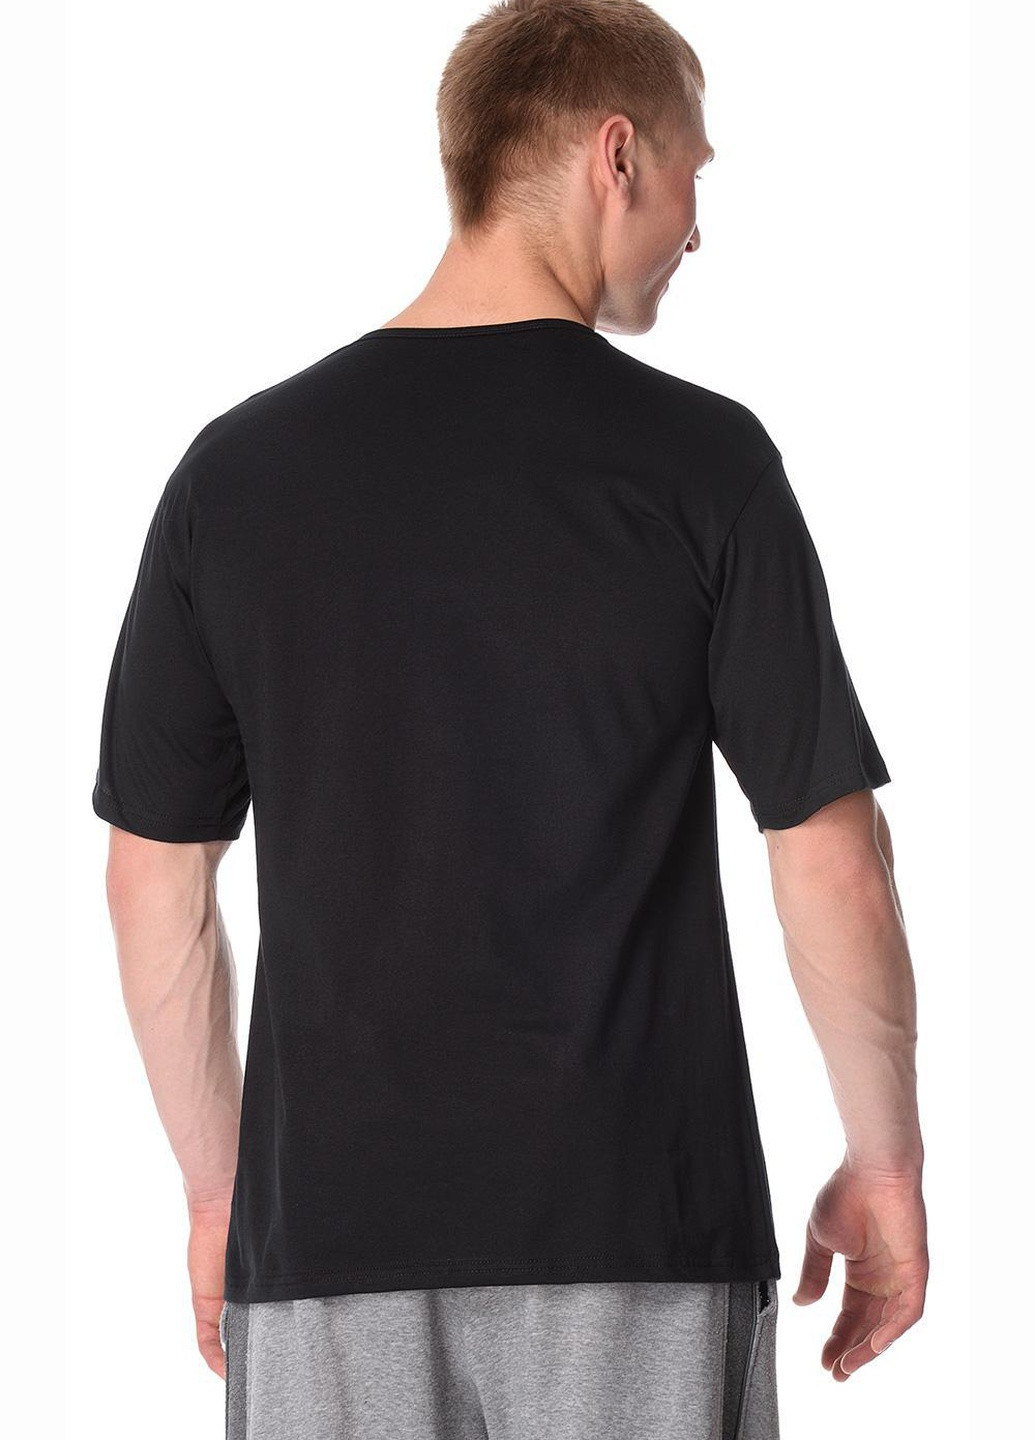 Чорна футболка чоловіча concord 4xl чорний 201 Cornette